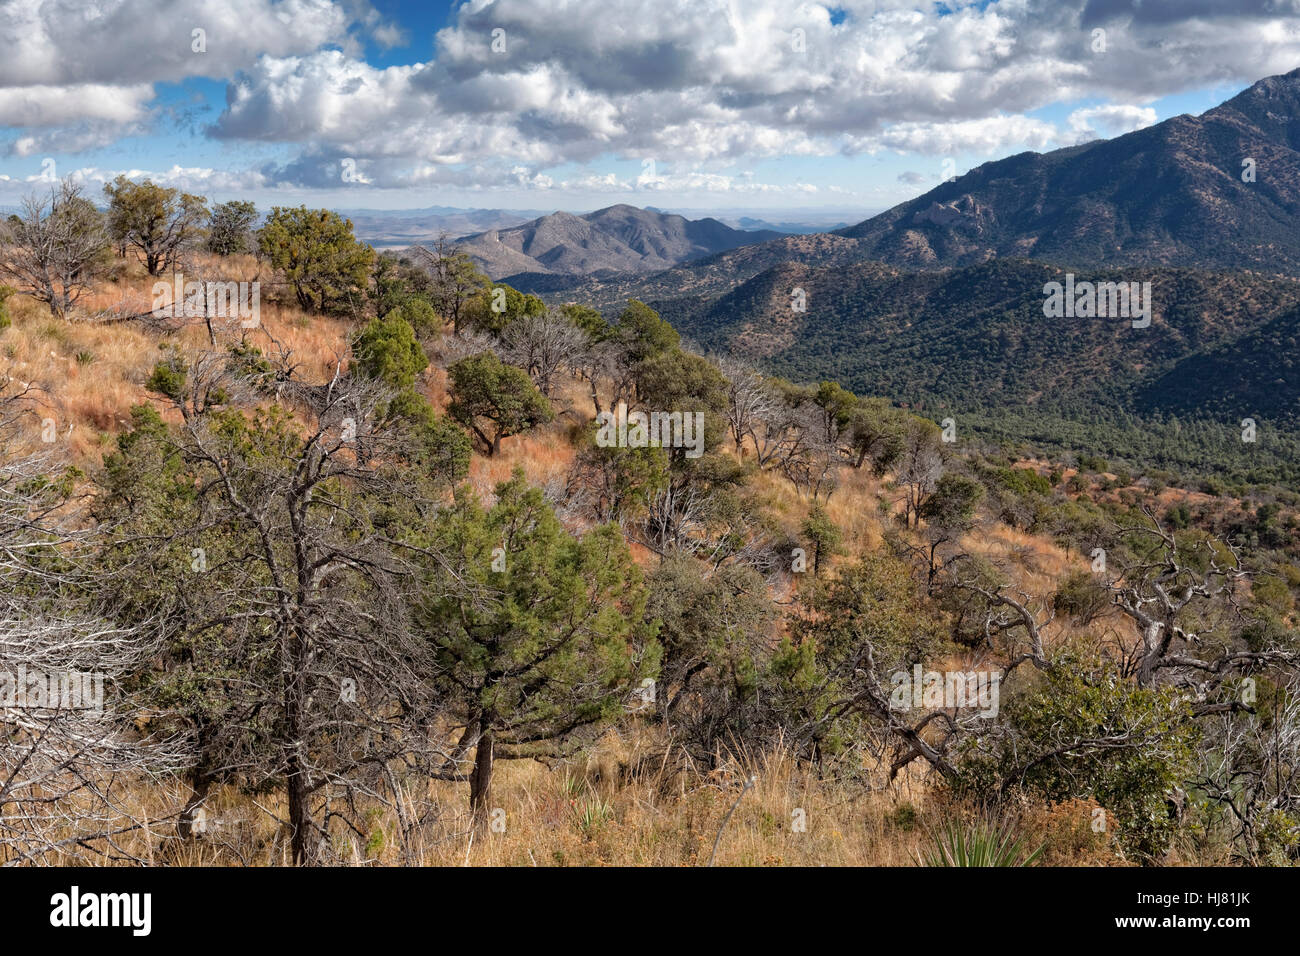 Chiricahua Mountain Wilderness View, Arizona Stock Photo